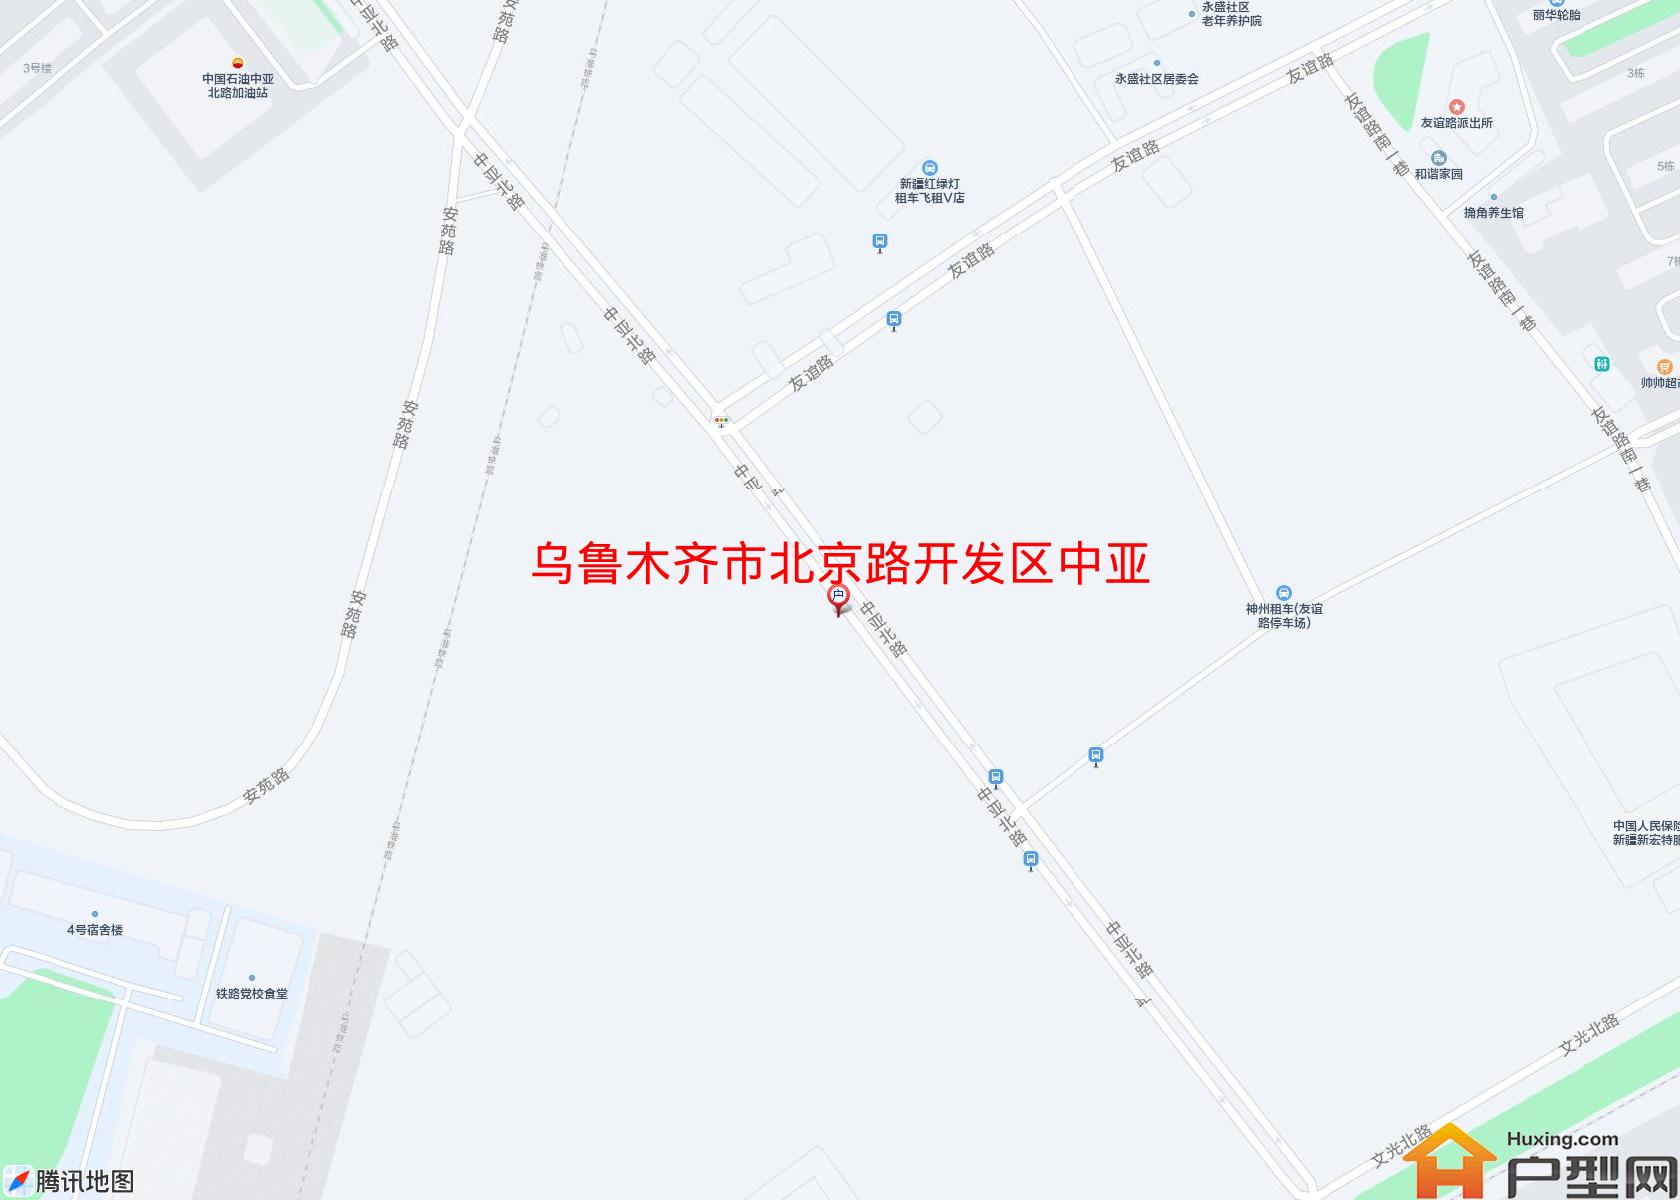 北京路开发区中亚北路小区 - 户型网